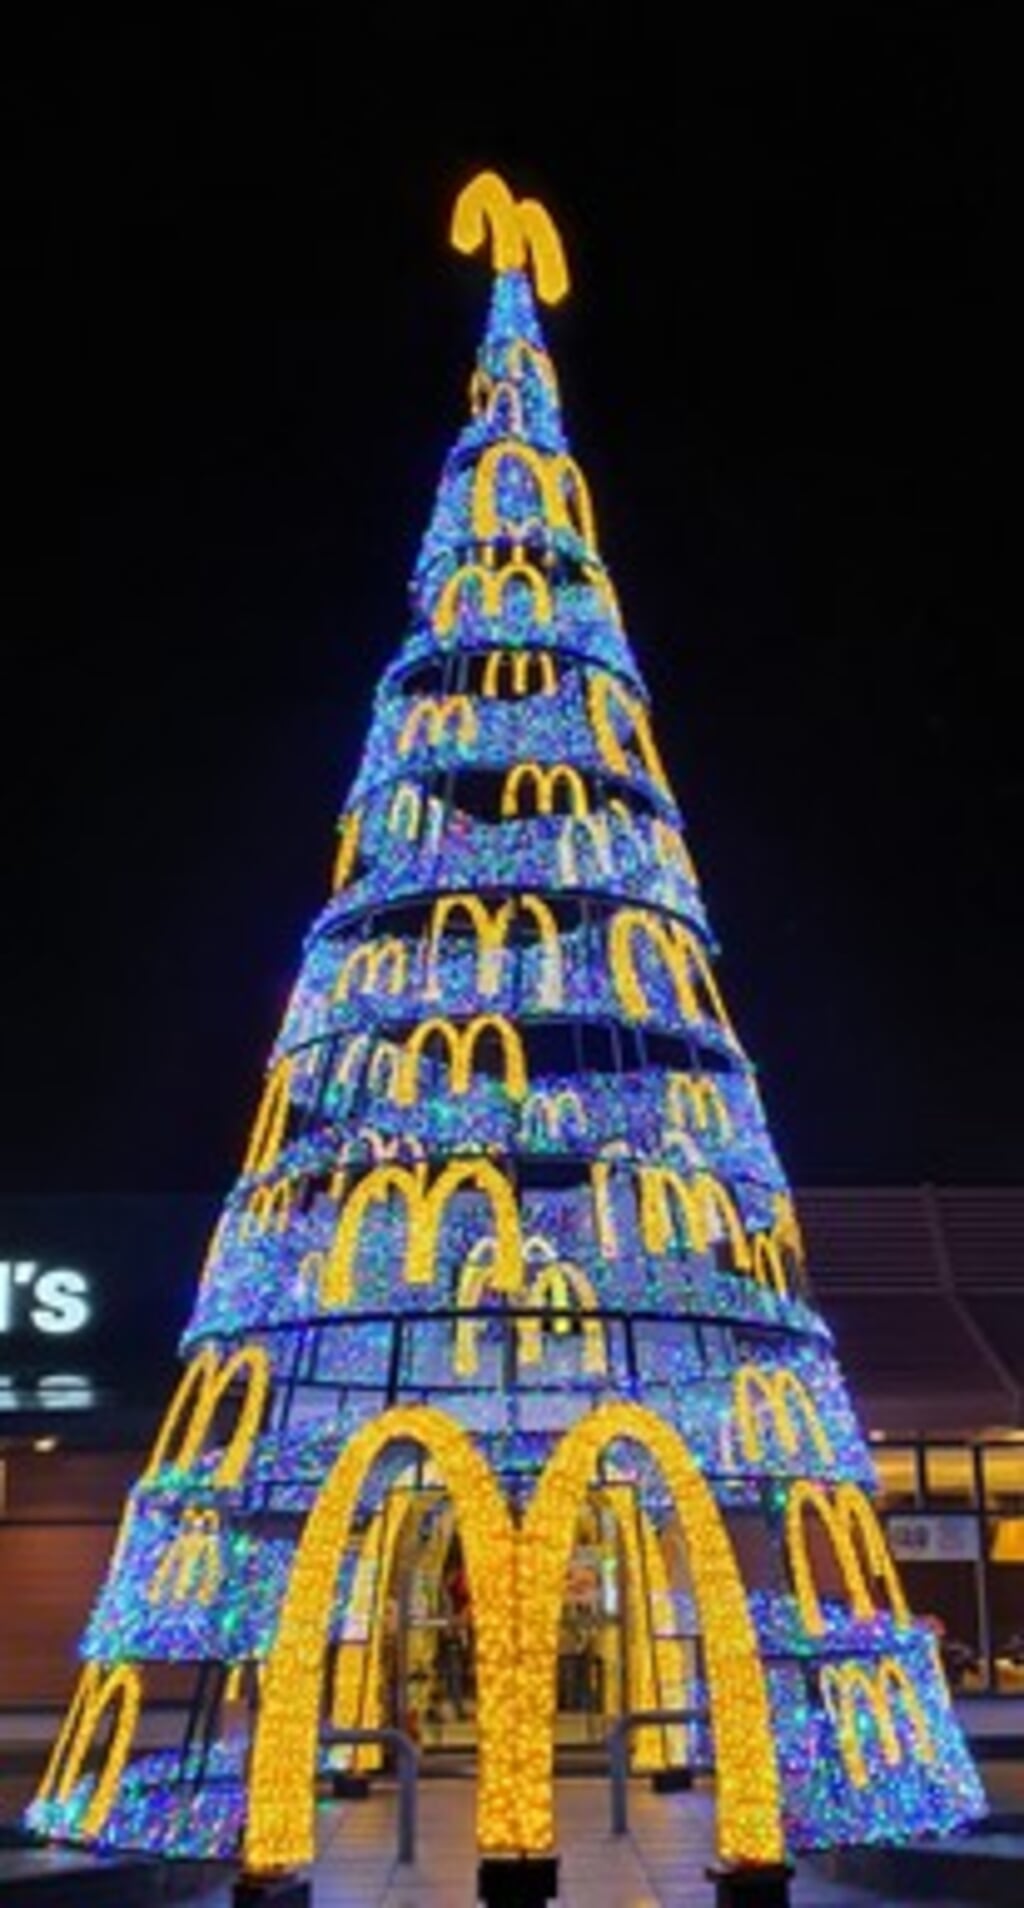 De grootste kerstboom van Alkmaar.